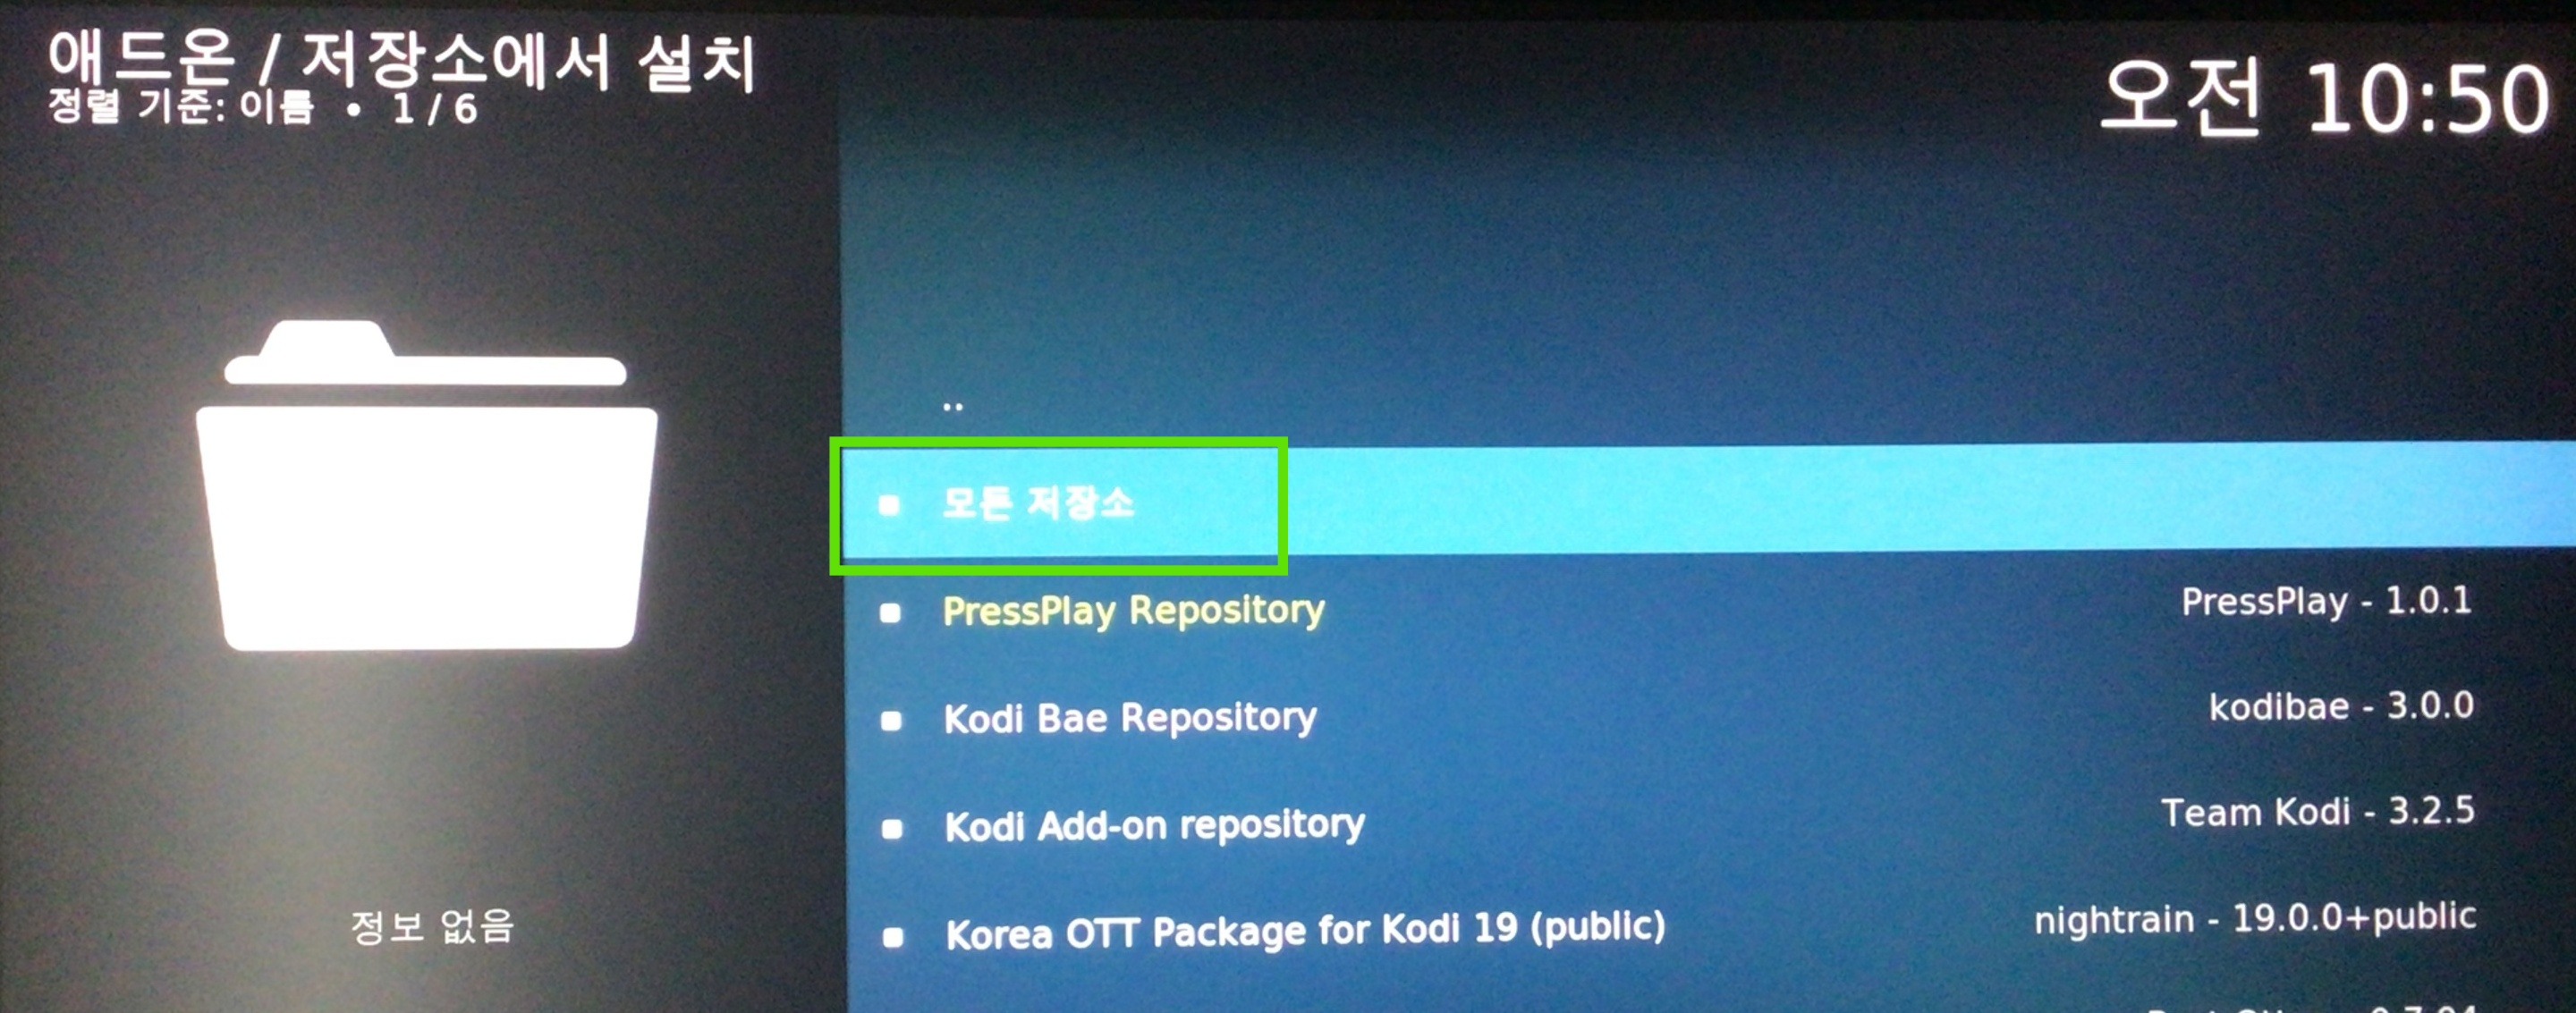 Kodi M3U IPTV Editor 1.3.6